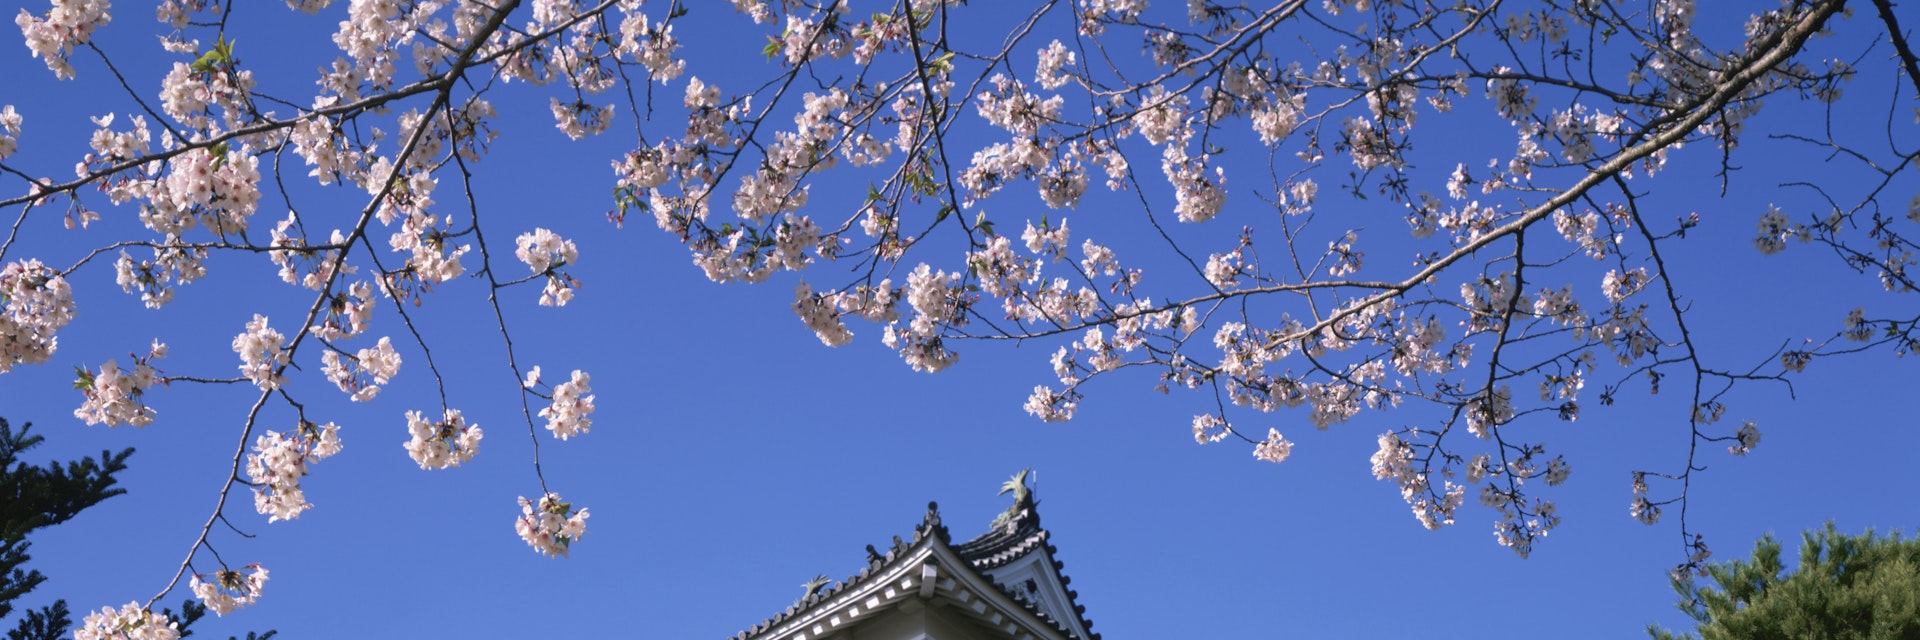 Japan, Kochi Prefecture, Kochi Castle